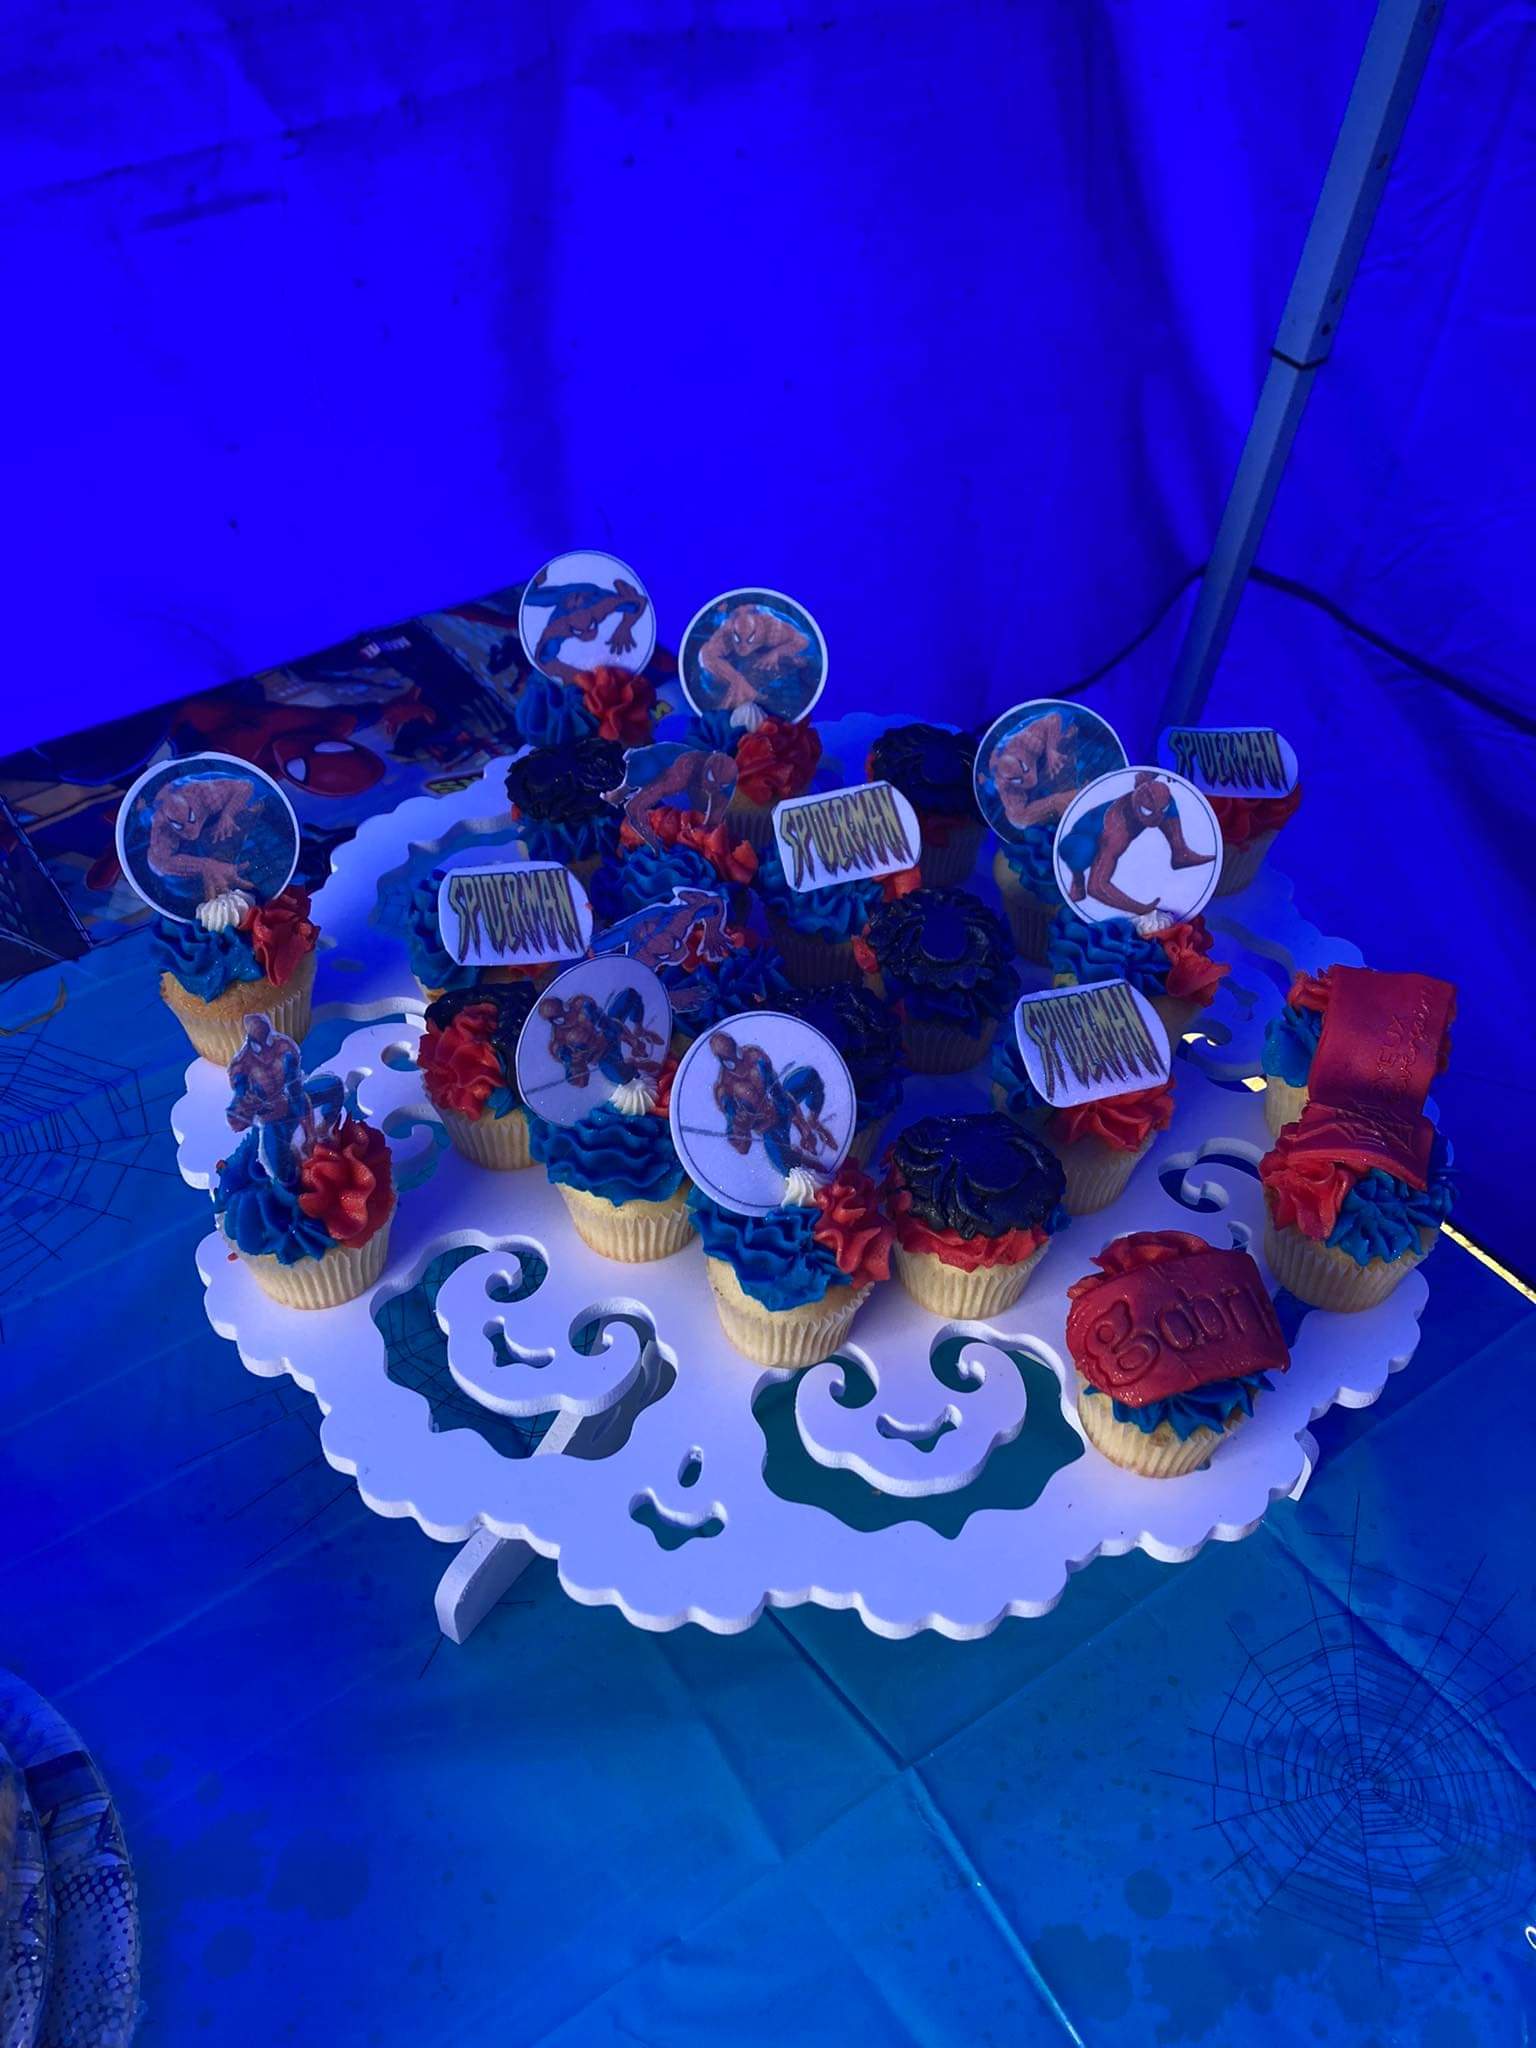 Cupcakes thème Disney Miraculous sur commande à la Réunion! – Délicecupcakes